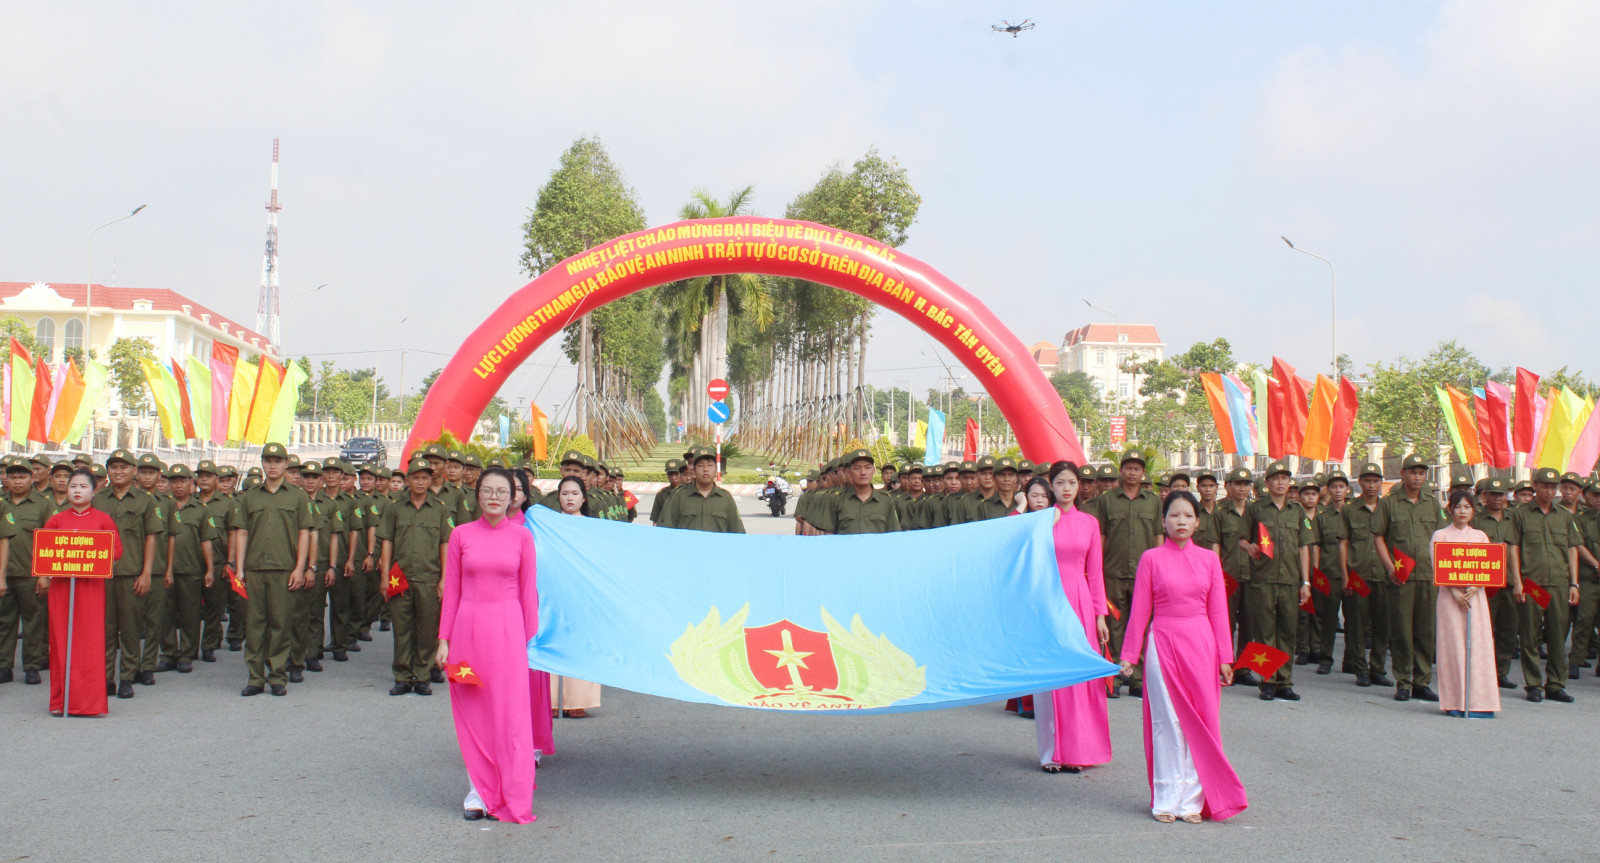 Lực lượng tham gia bảo vệ ANTT ở cơ sở huyện Bắc Tân Uyên tham gia diễu hành.